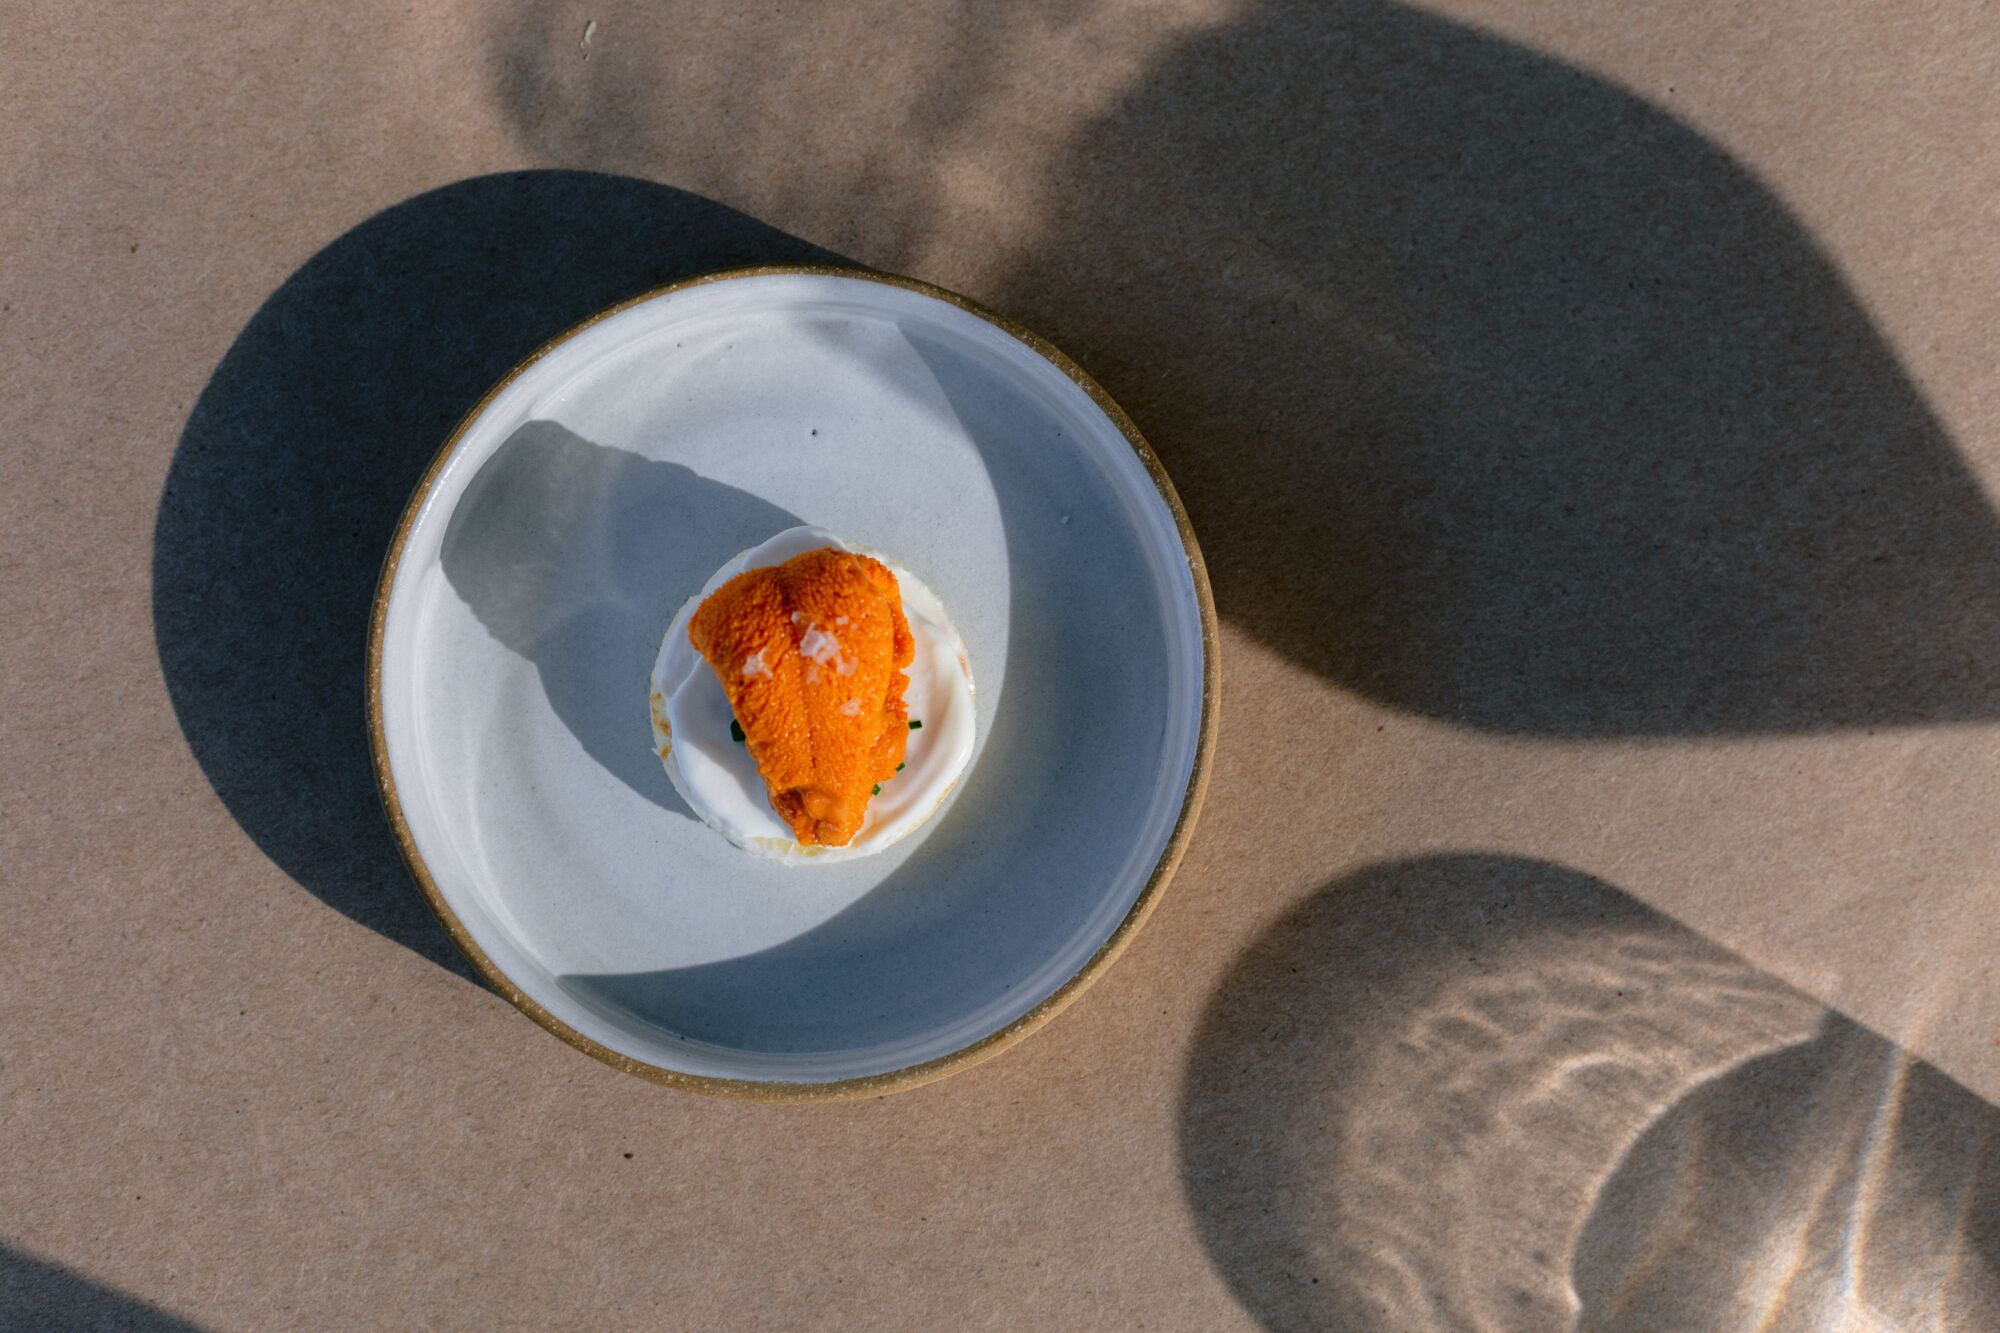 The Santa Barbara Sea Urchin, a specialty dish at Bell's.